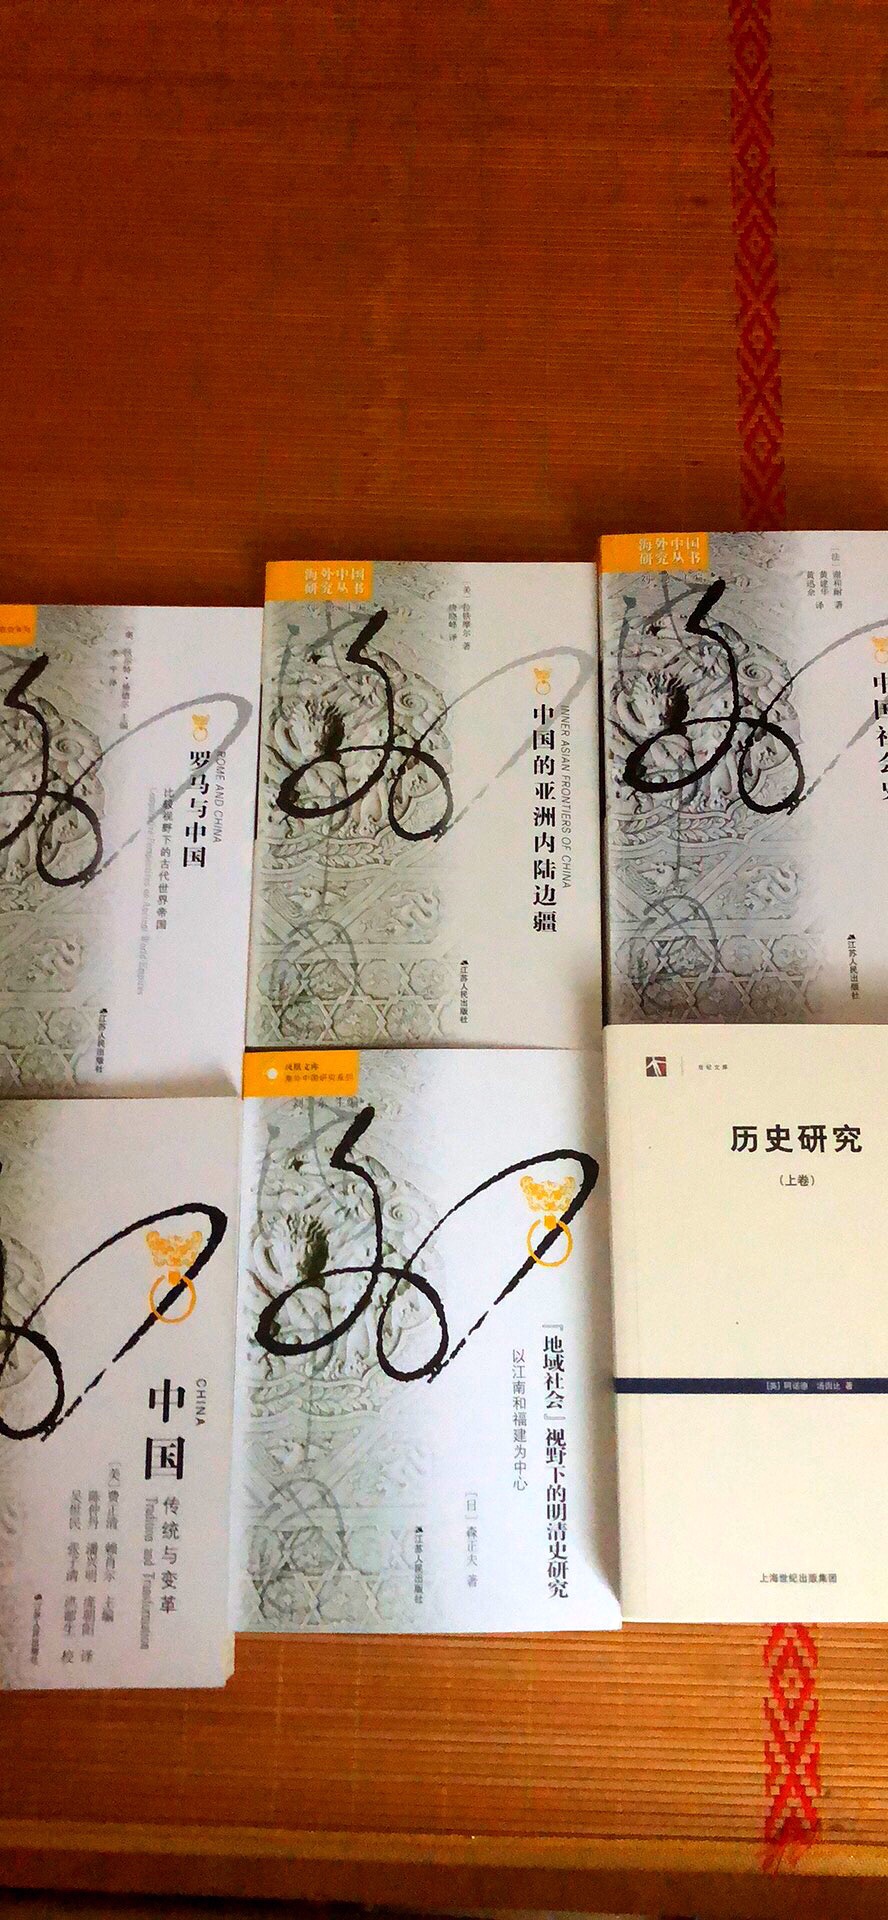 一直期待阅读的一套书，国外研究中国历史的一系书籍，值得期待！